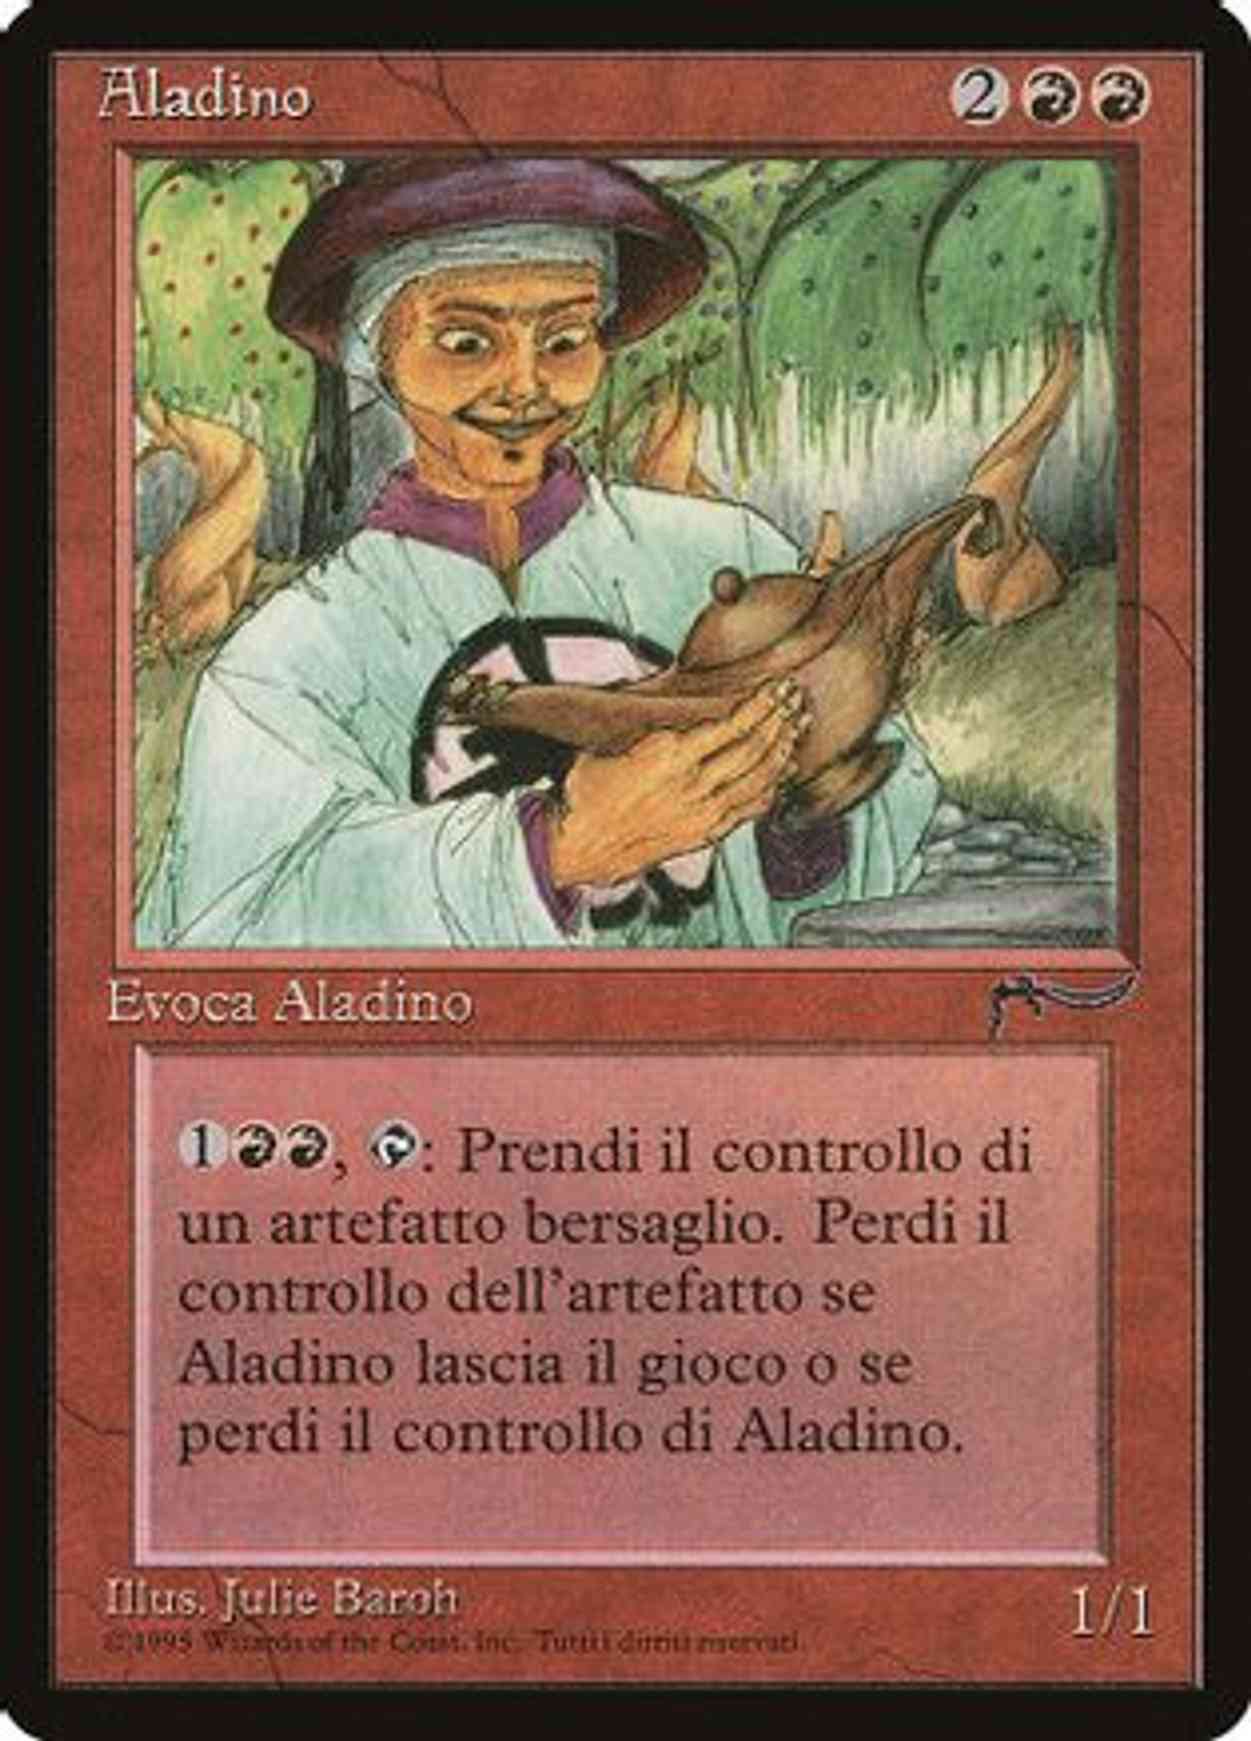 Aladdin (Italian) - "Aladino" magic card front